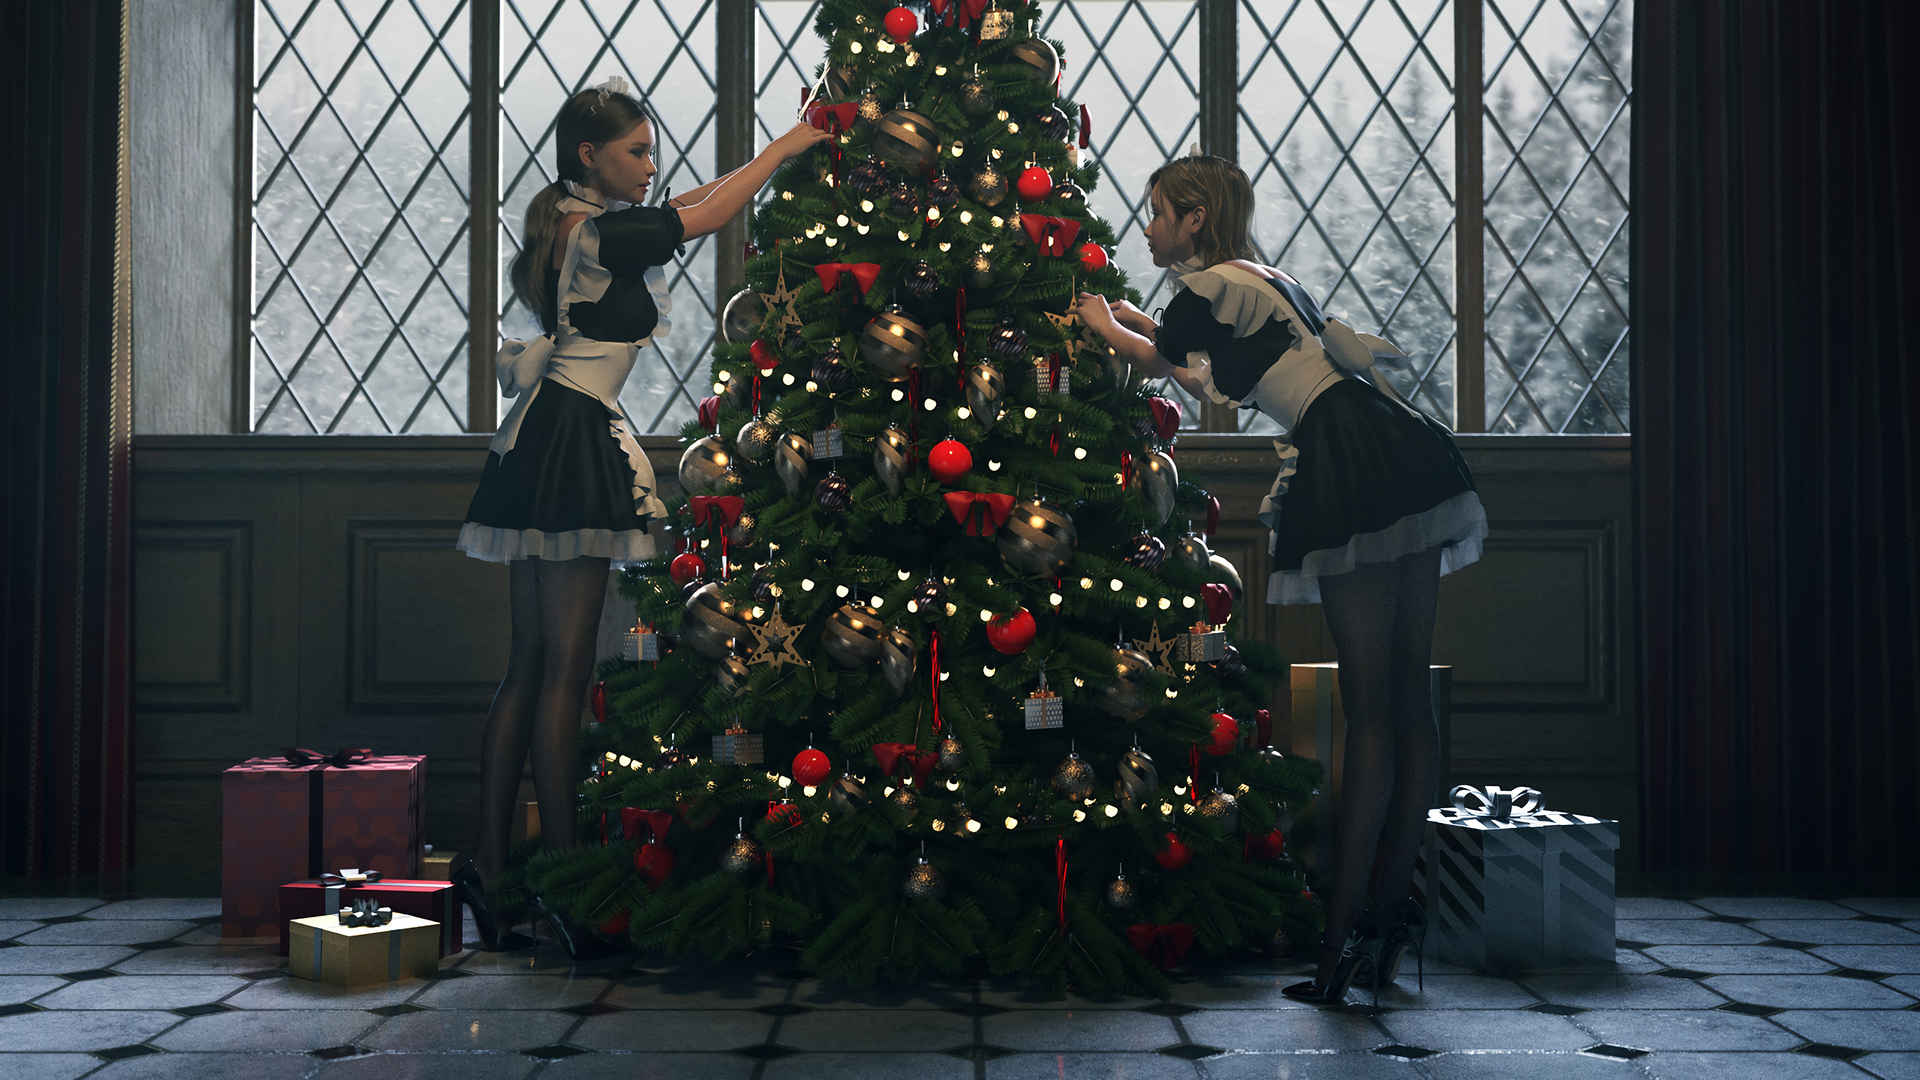 两个女仆 黑色丝袜 美腿 布置圣诞节 圣诞树